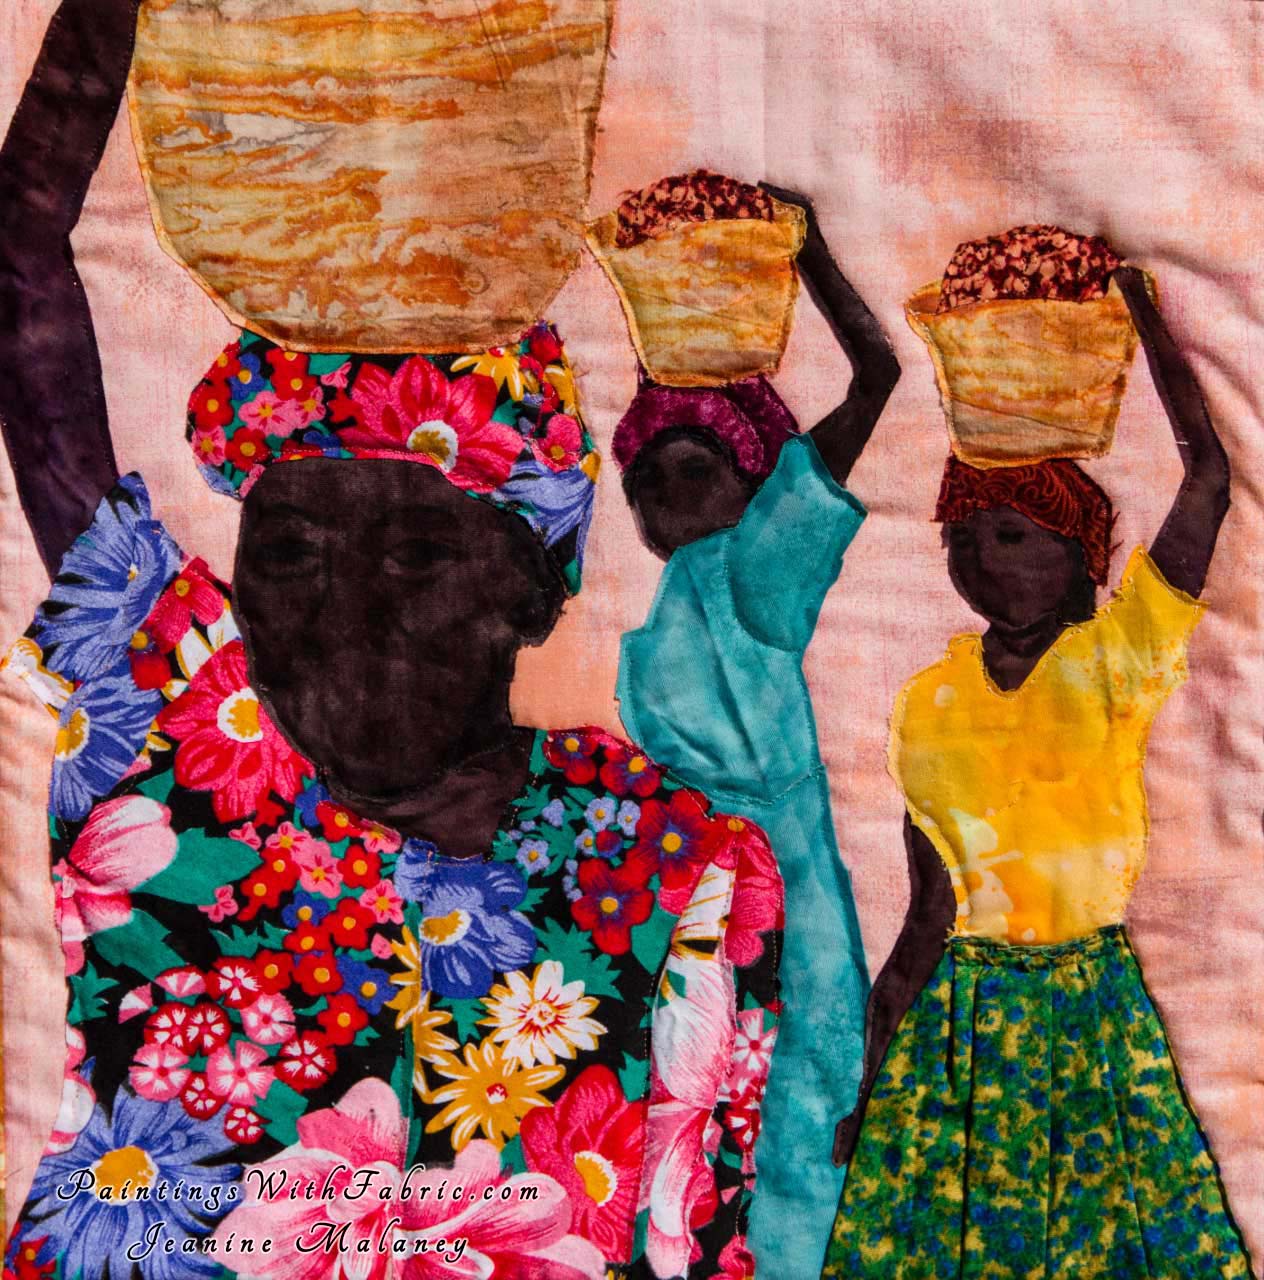 Buy Fair Trade Baskets Art Quilt Landscape Quilt, Watercolor Quilt